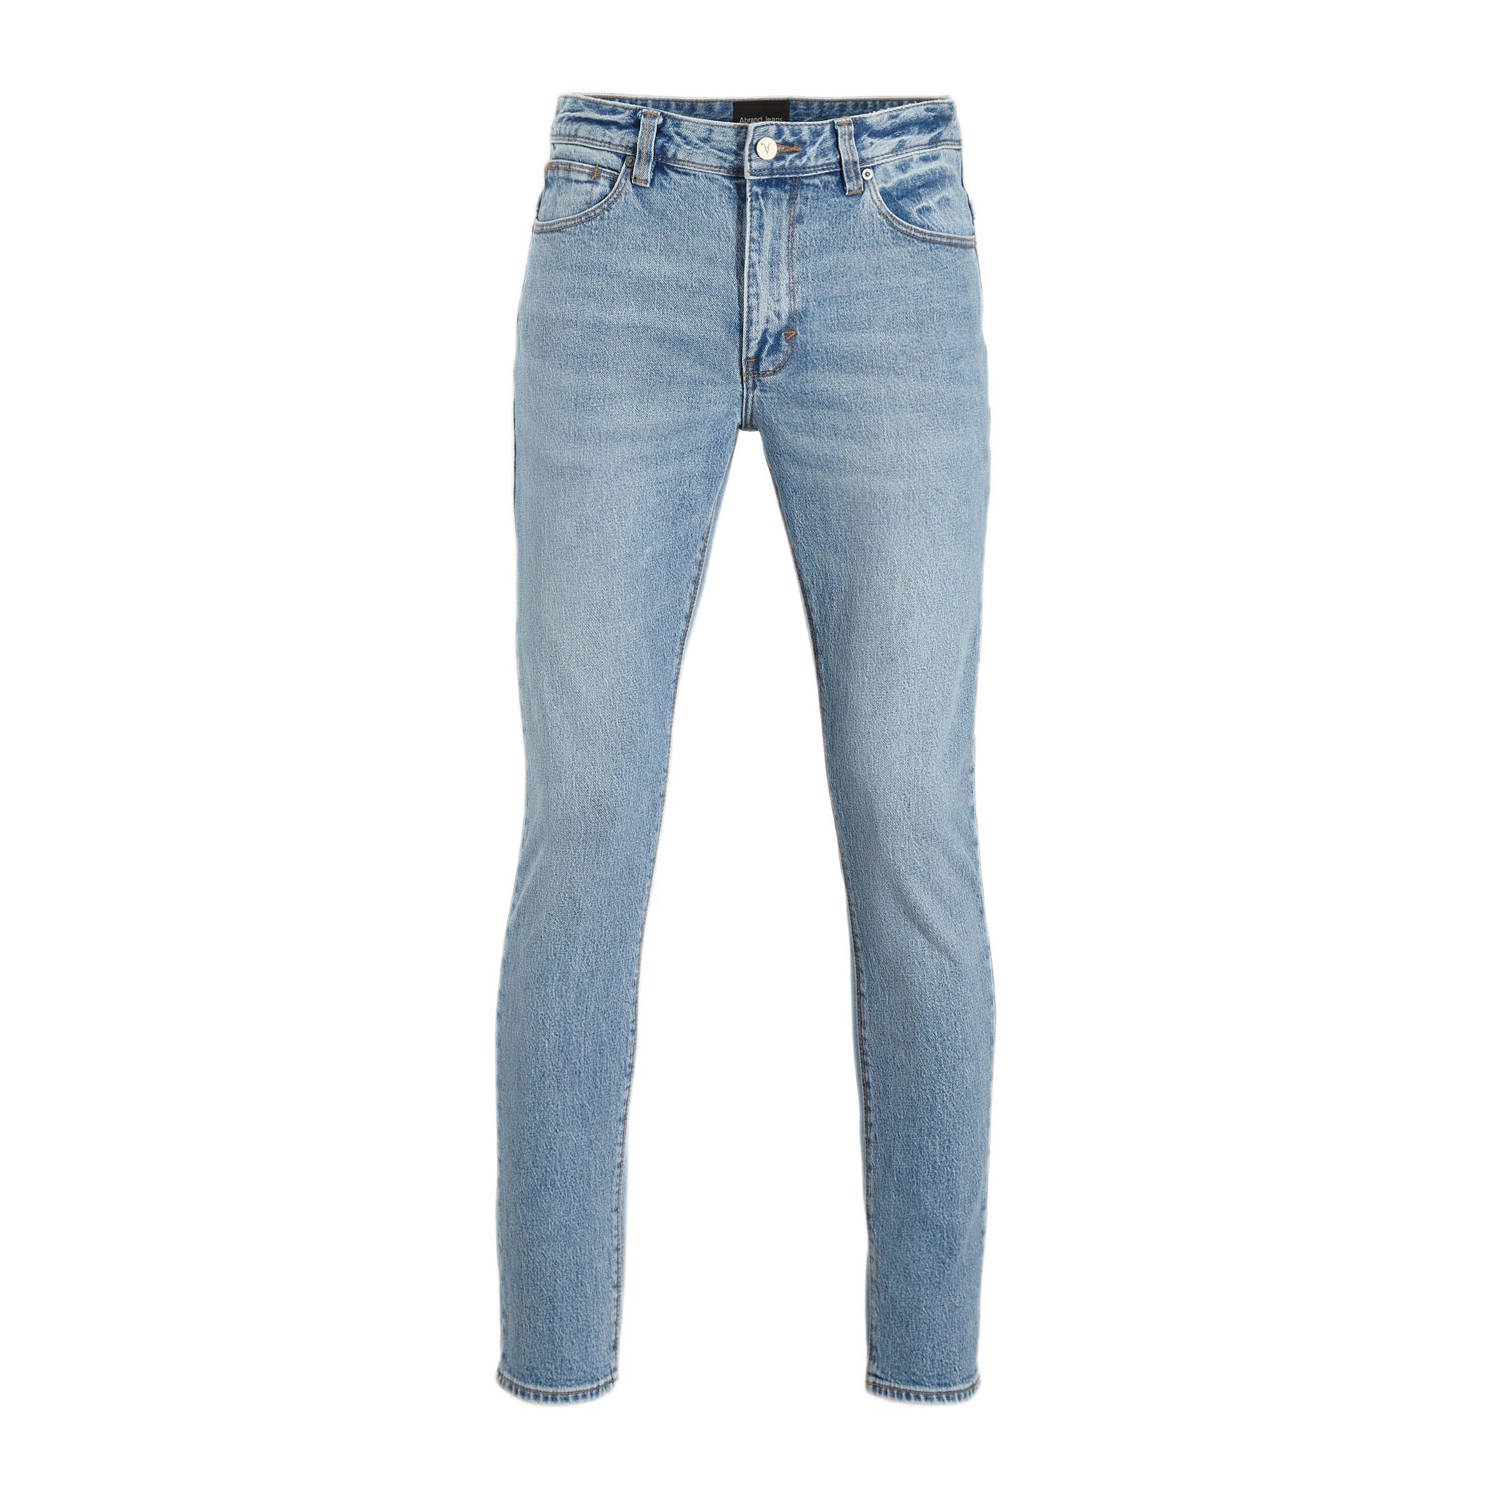 Abrand Jeans slim fit jeans DEXTER mid vintage blue